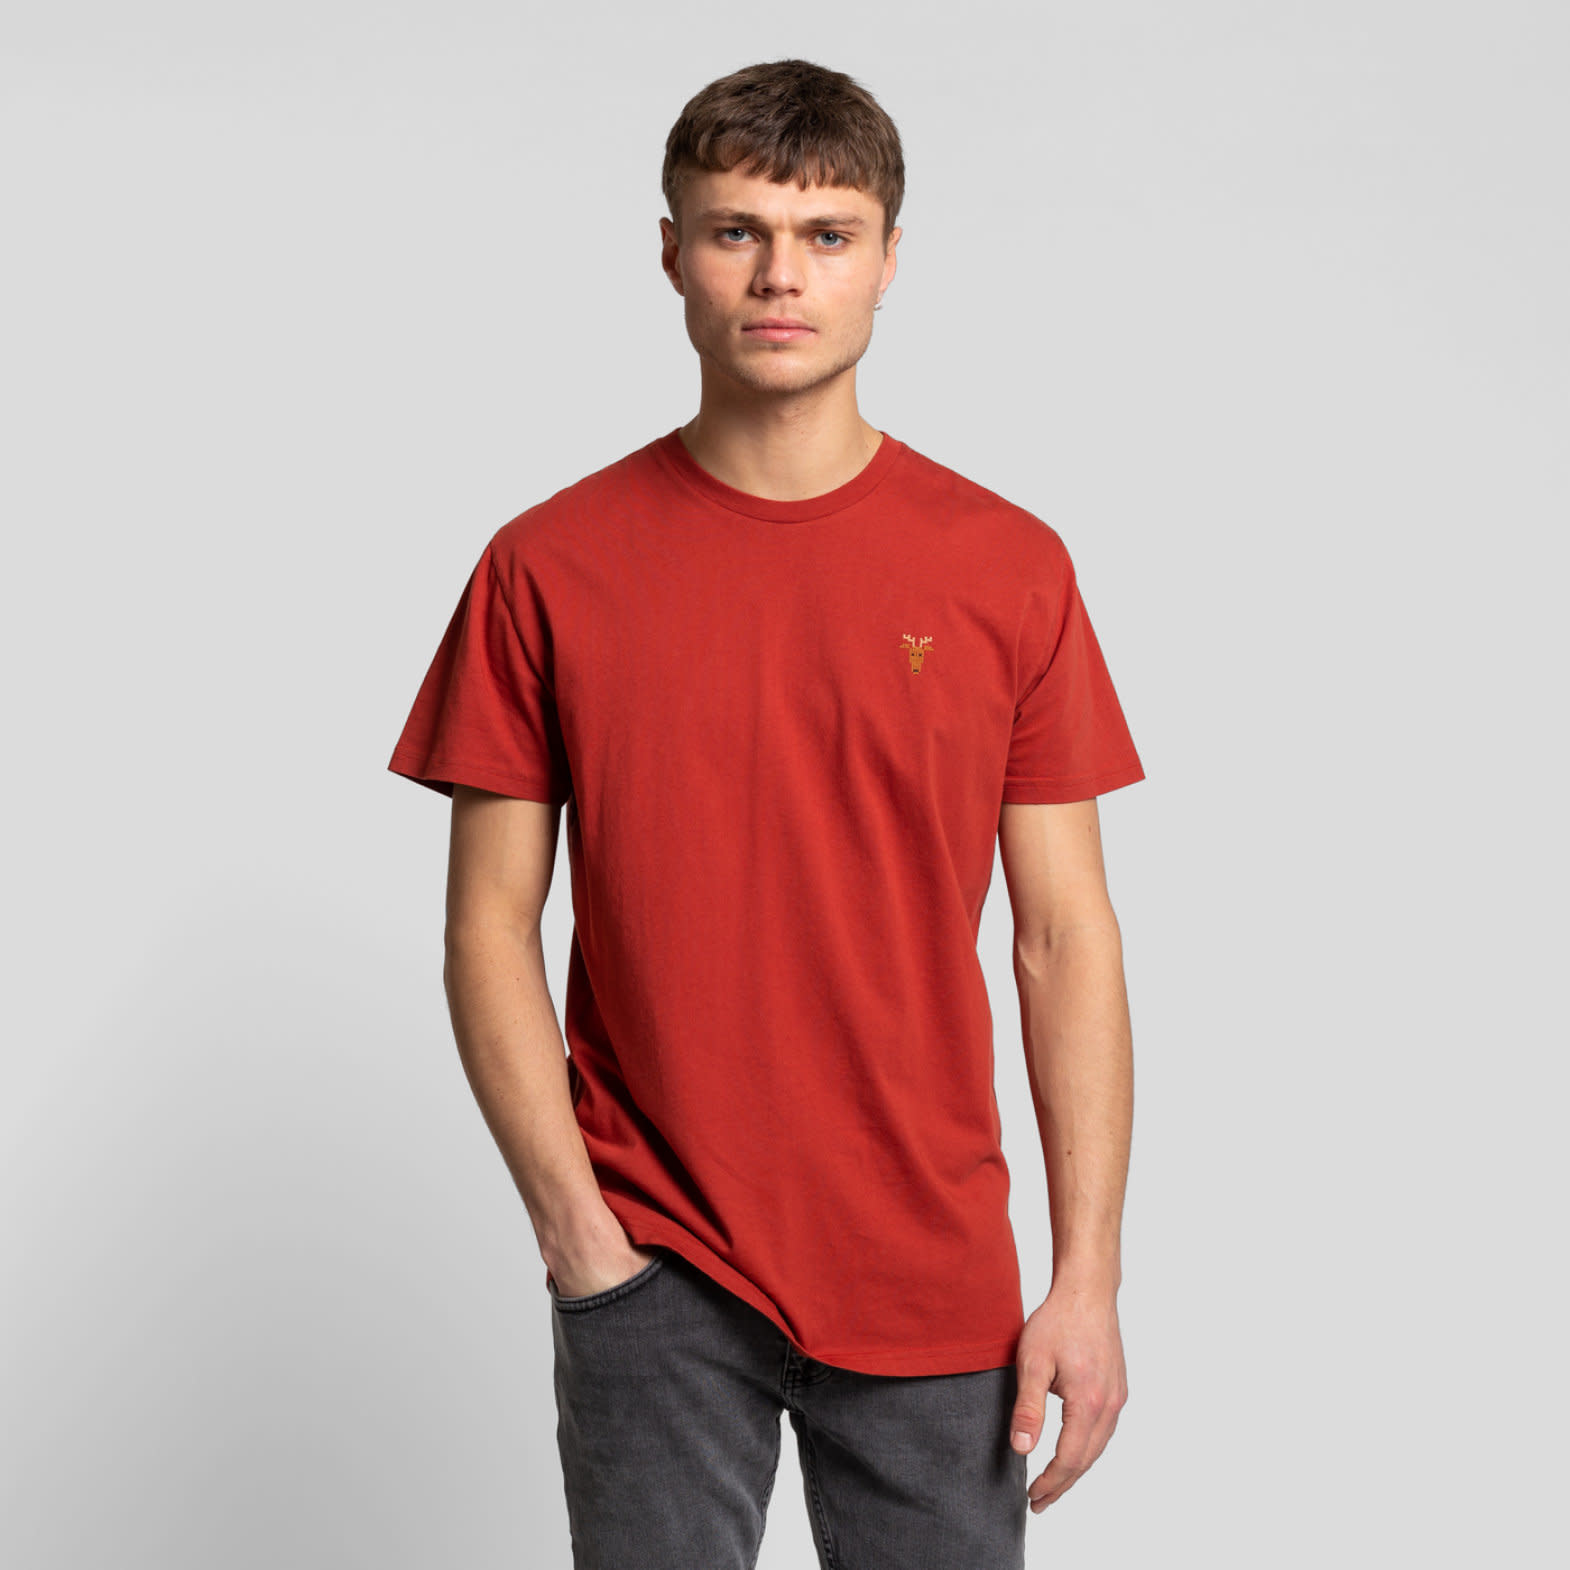 RVLT RVLT, 1236 MOO Regular T Shirt, red, M